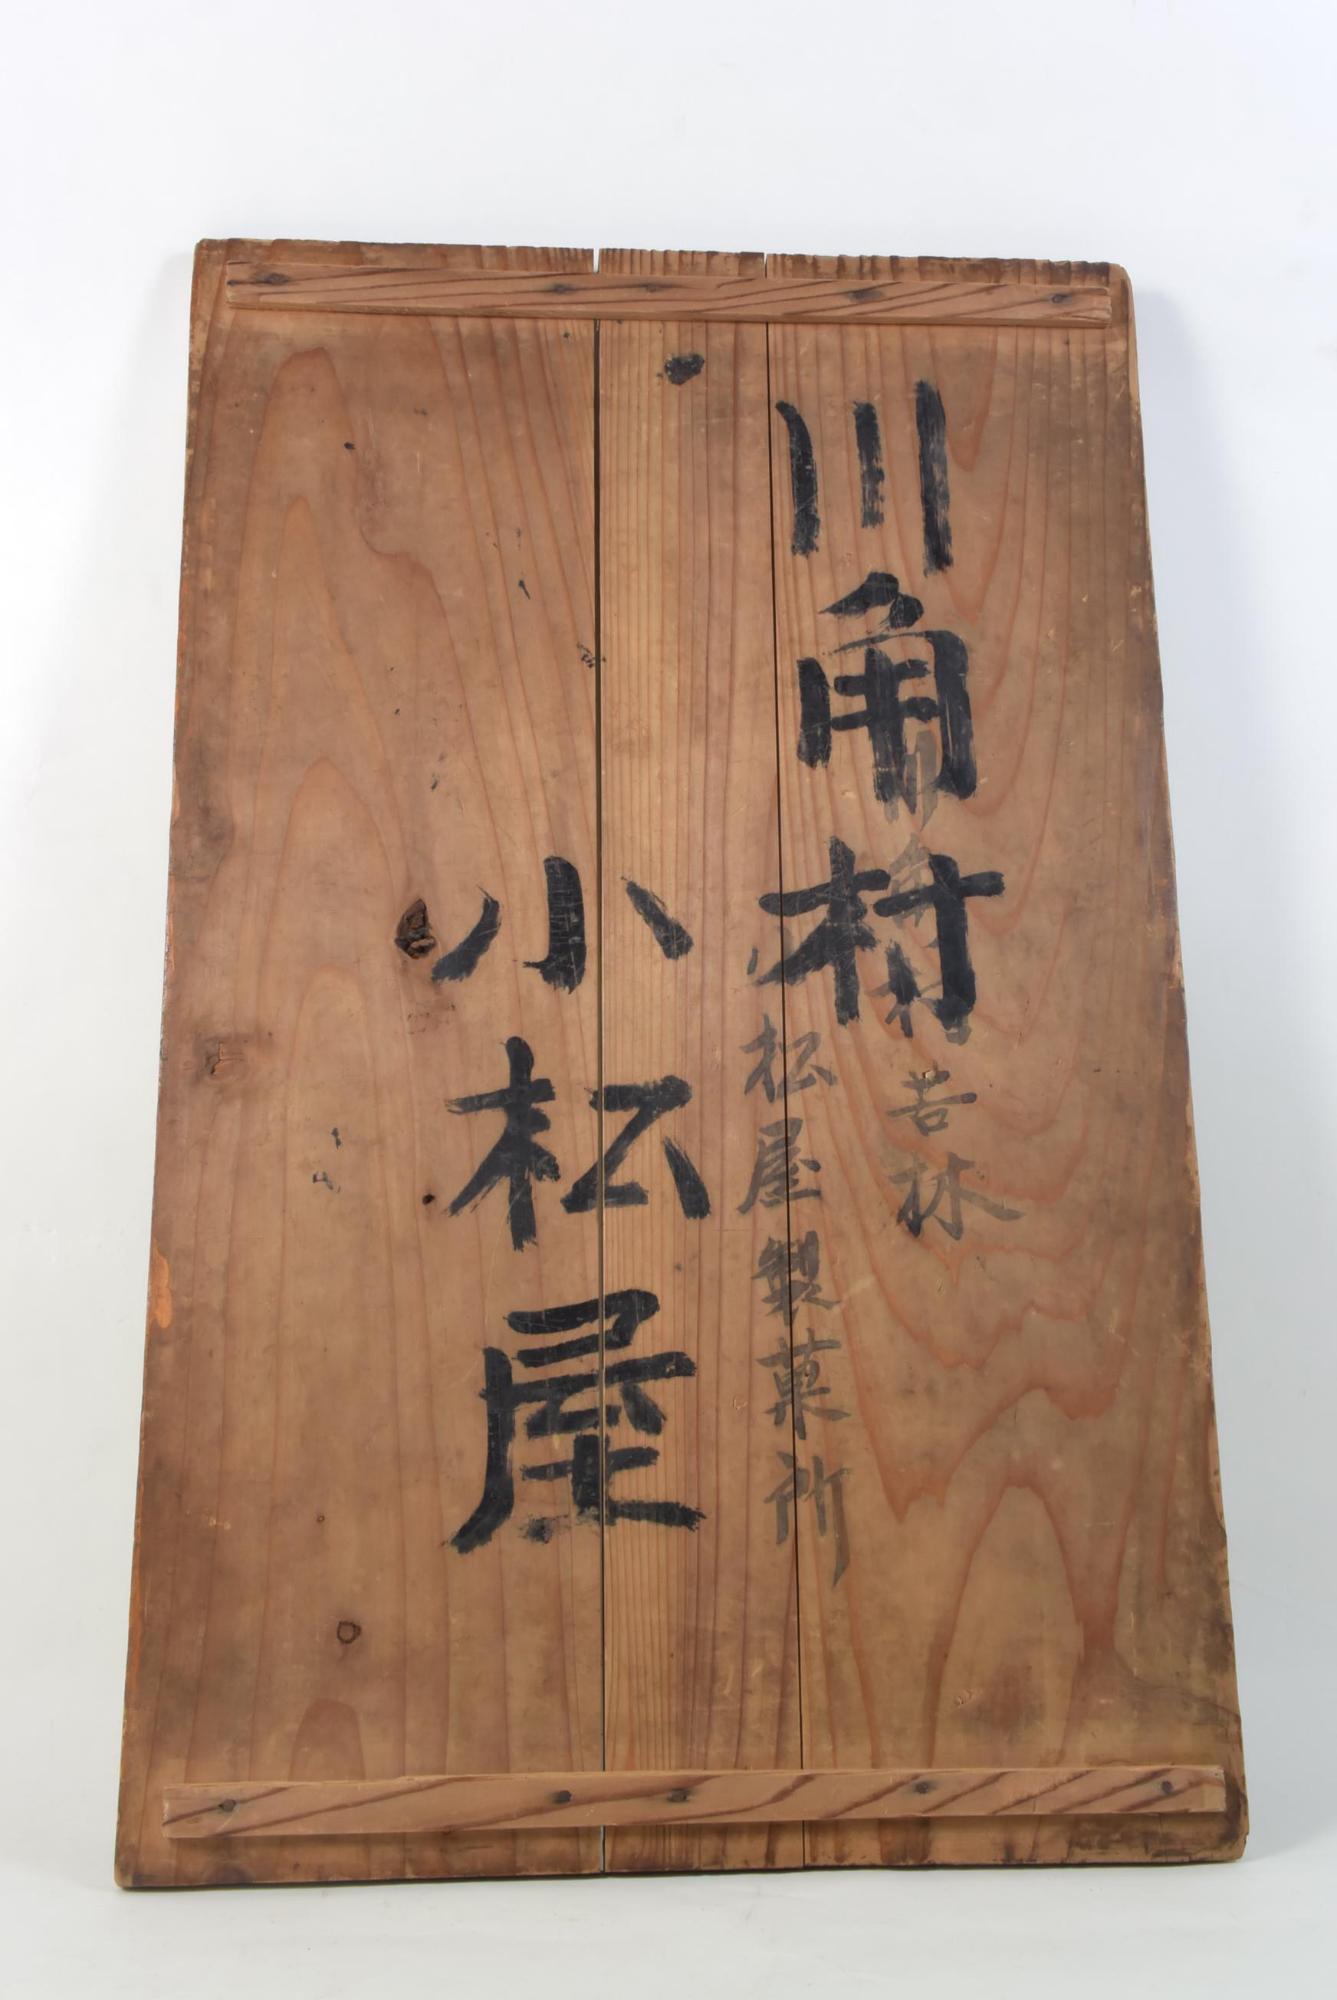 「川角村 苦林 小松屋製菓所 小松屋」の文字の墨書がある菓子箱の蓋の写真